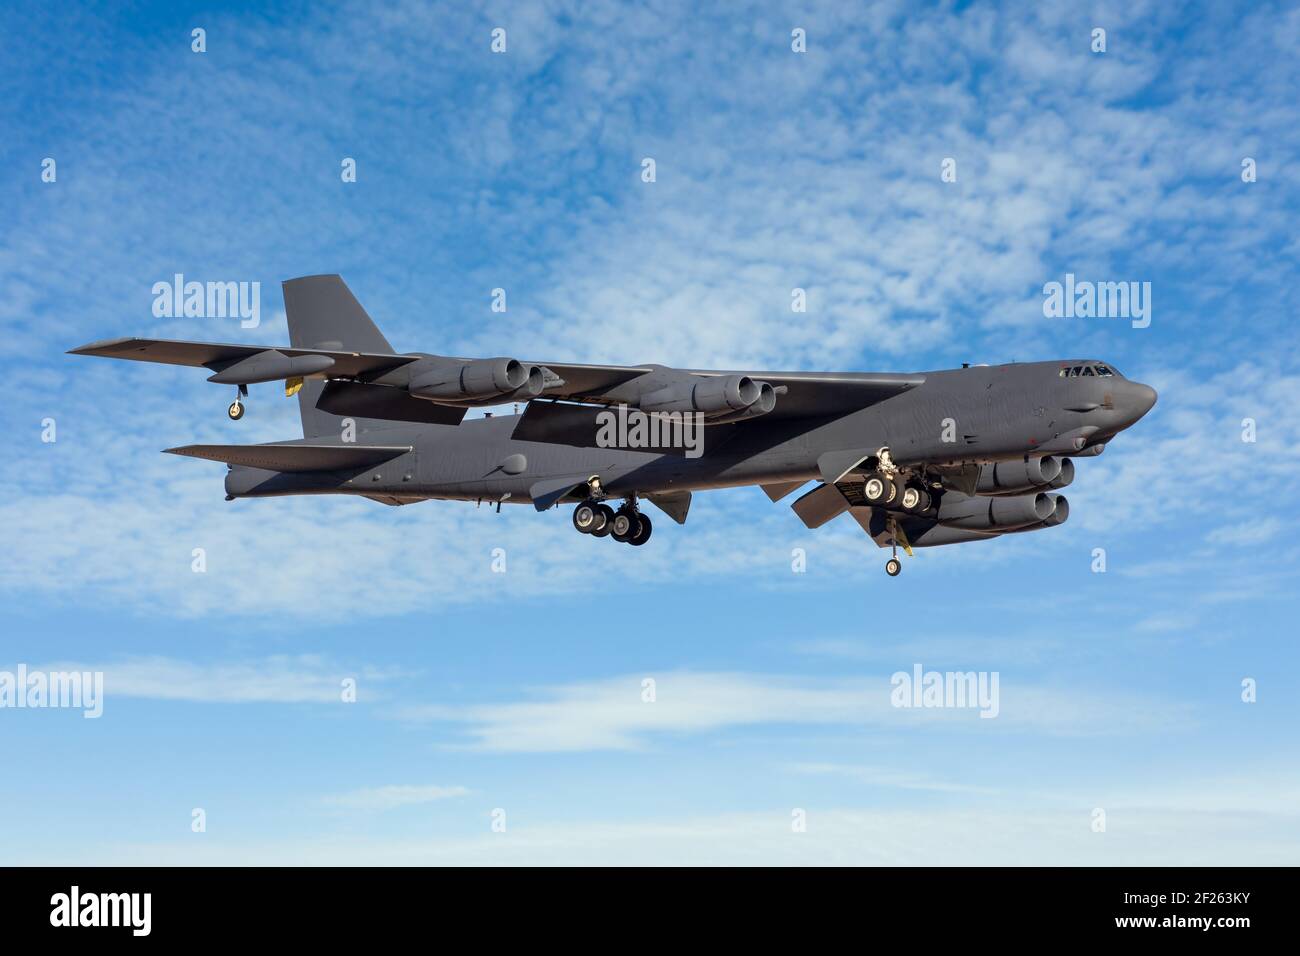 Le bombardier Boeing B-52 atterrit contre un ciel bleu. Huit bombardiers lourds de l'USAF ont été déployés pour des missions de combat Banque D'Images